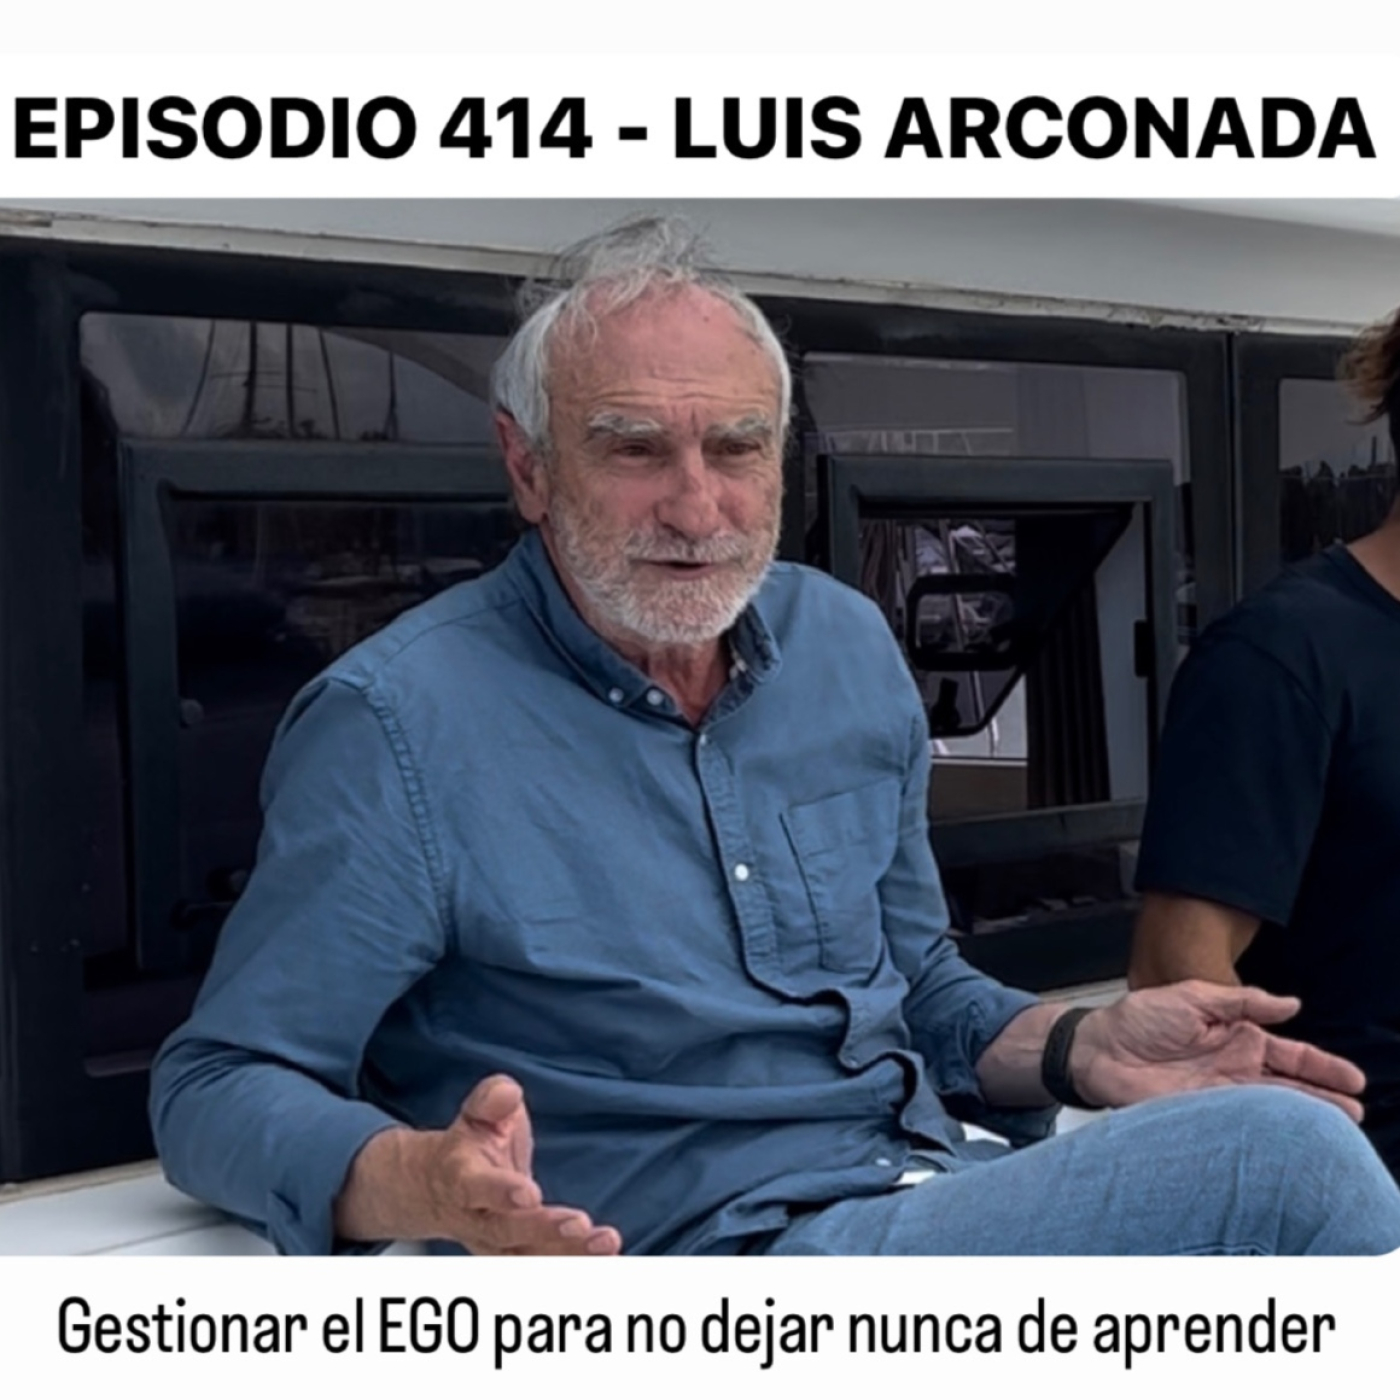 DE VETERINARIO A PILOTO, DE PILOTO A PRESIDENTE DE UNA MULTINACIONAL // Luis Arconada con Pedro Vivar